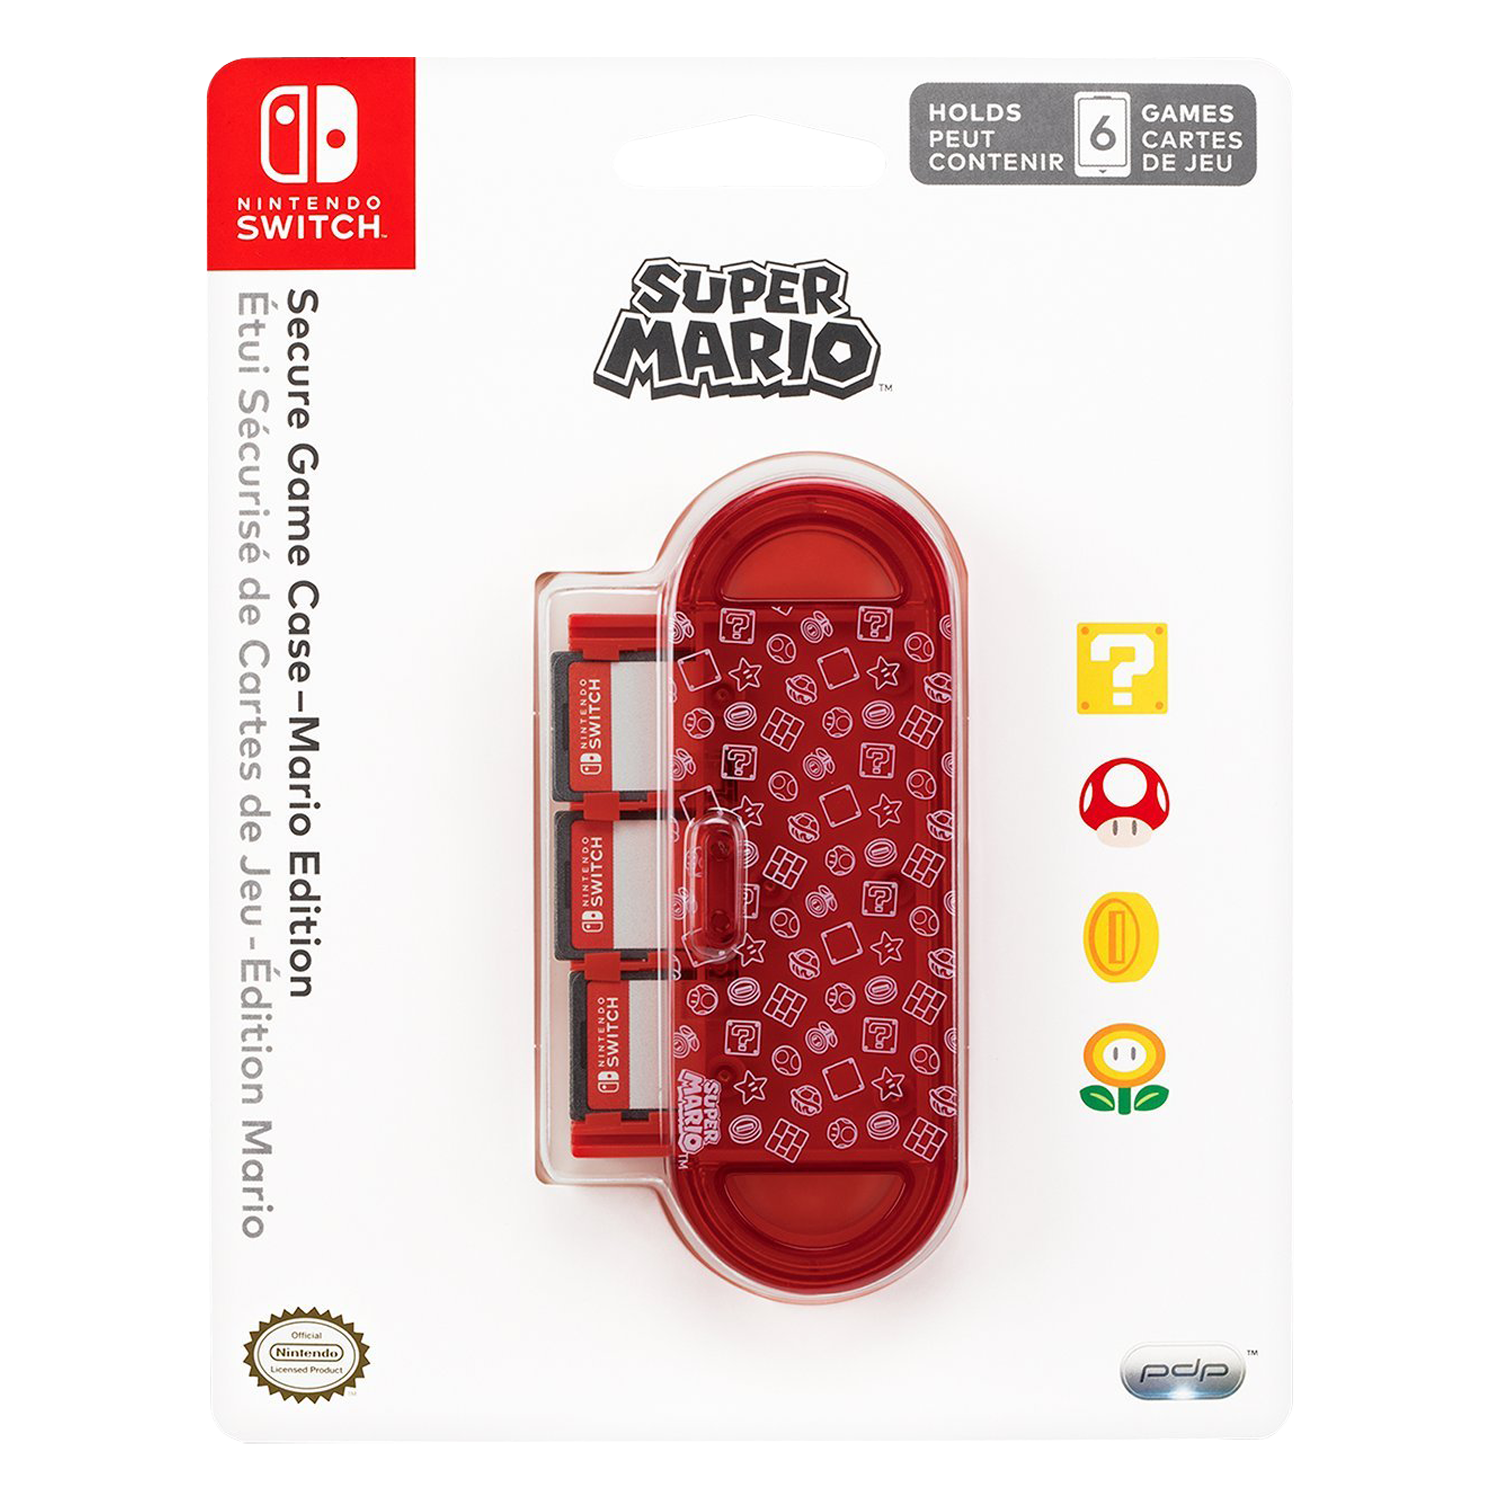 Case Protetor Game Card 6 Mario Edition para Nintendo Switch - (1012)